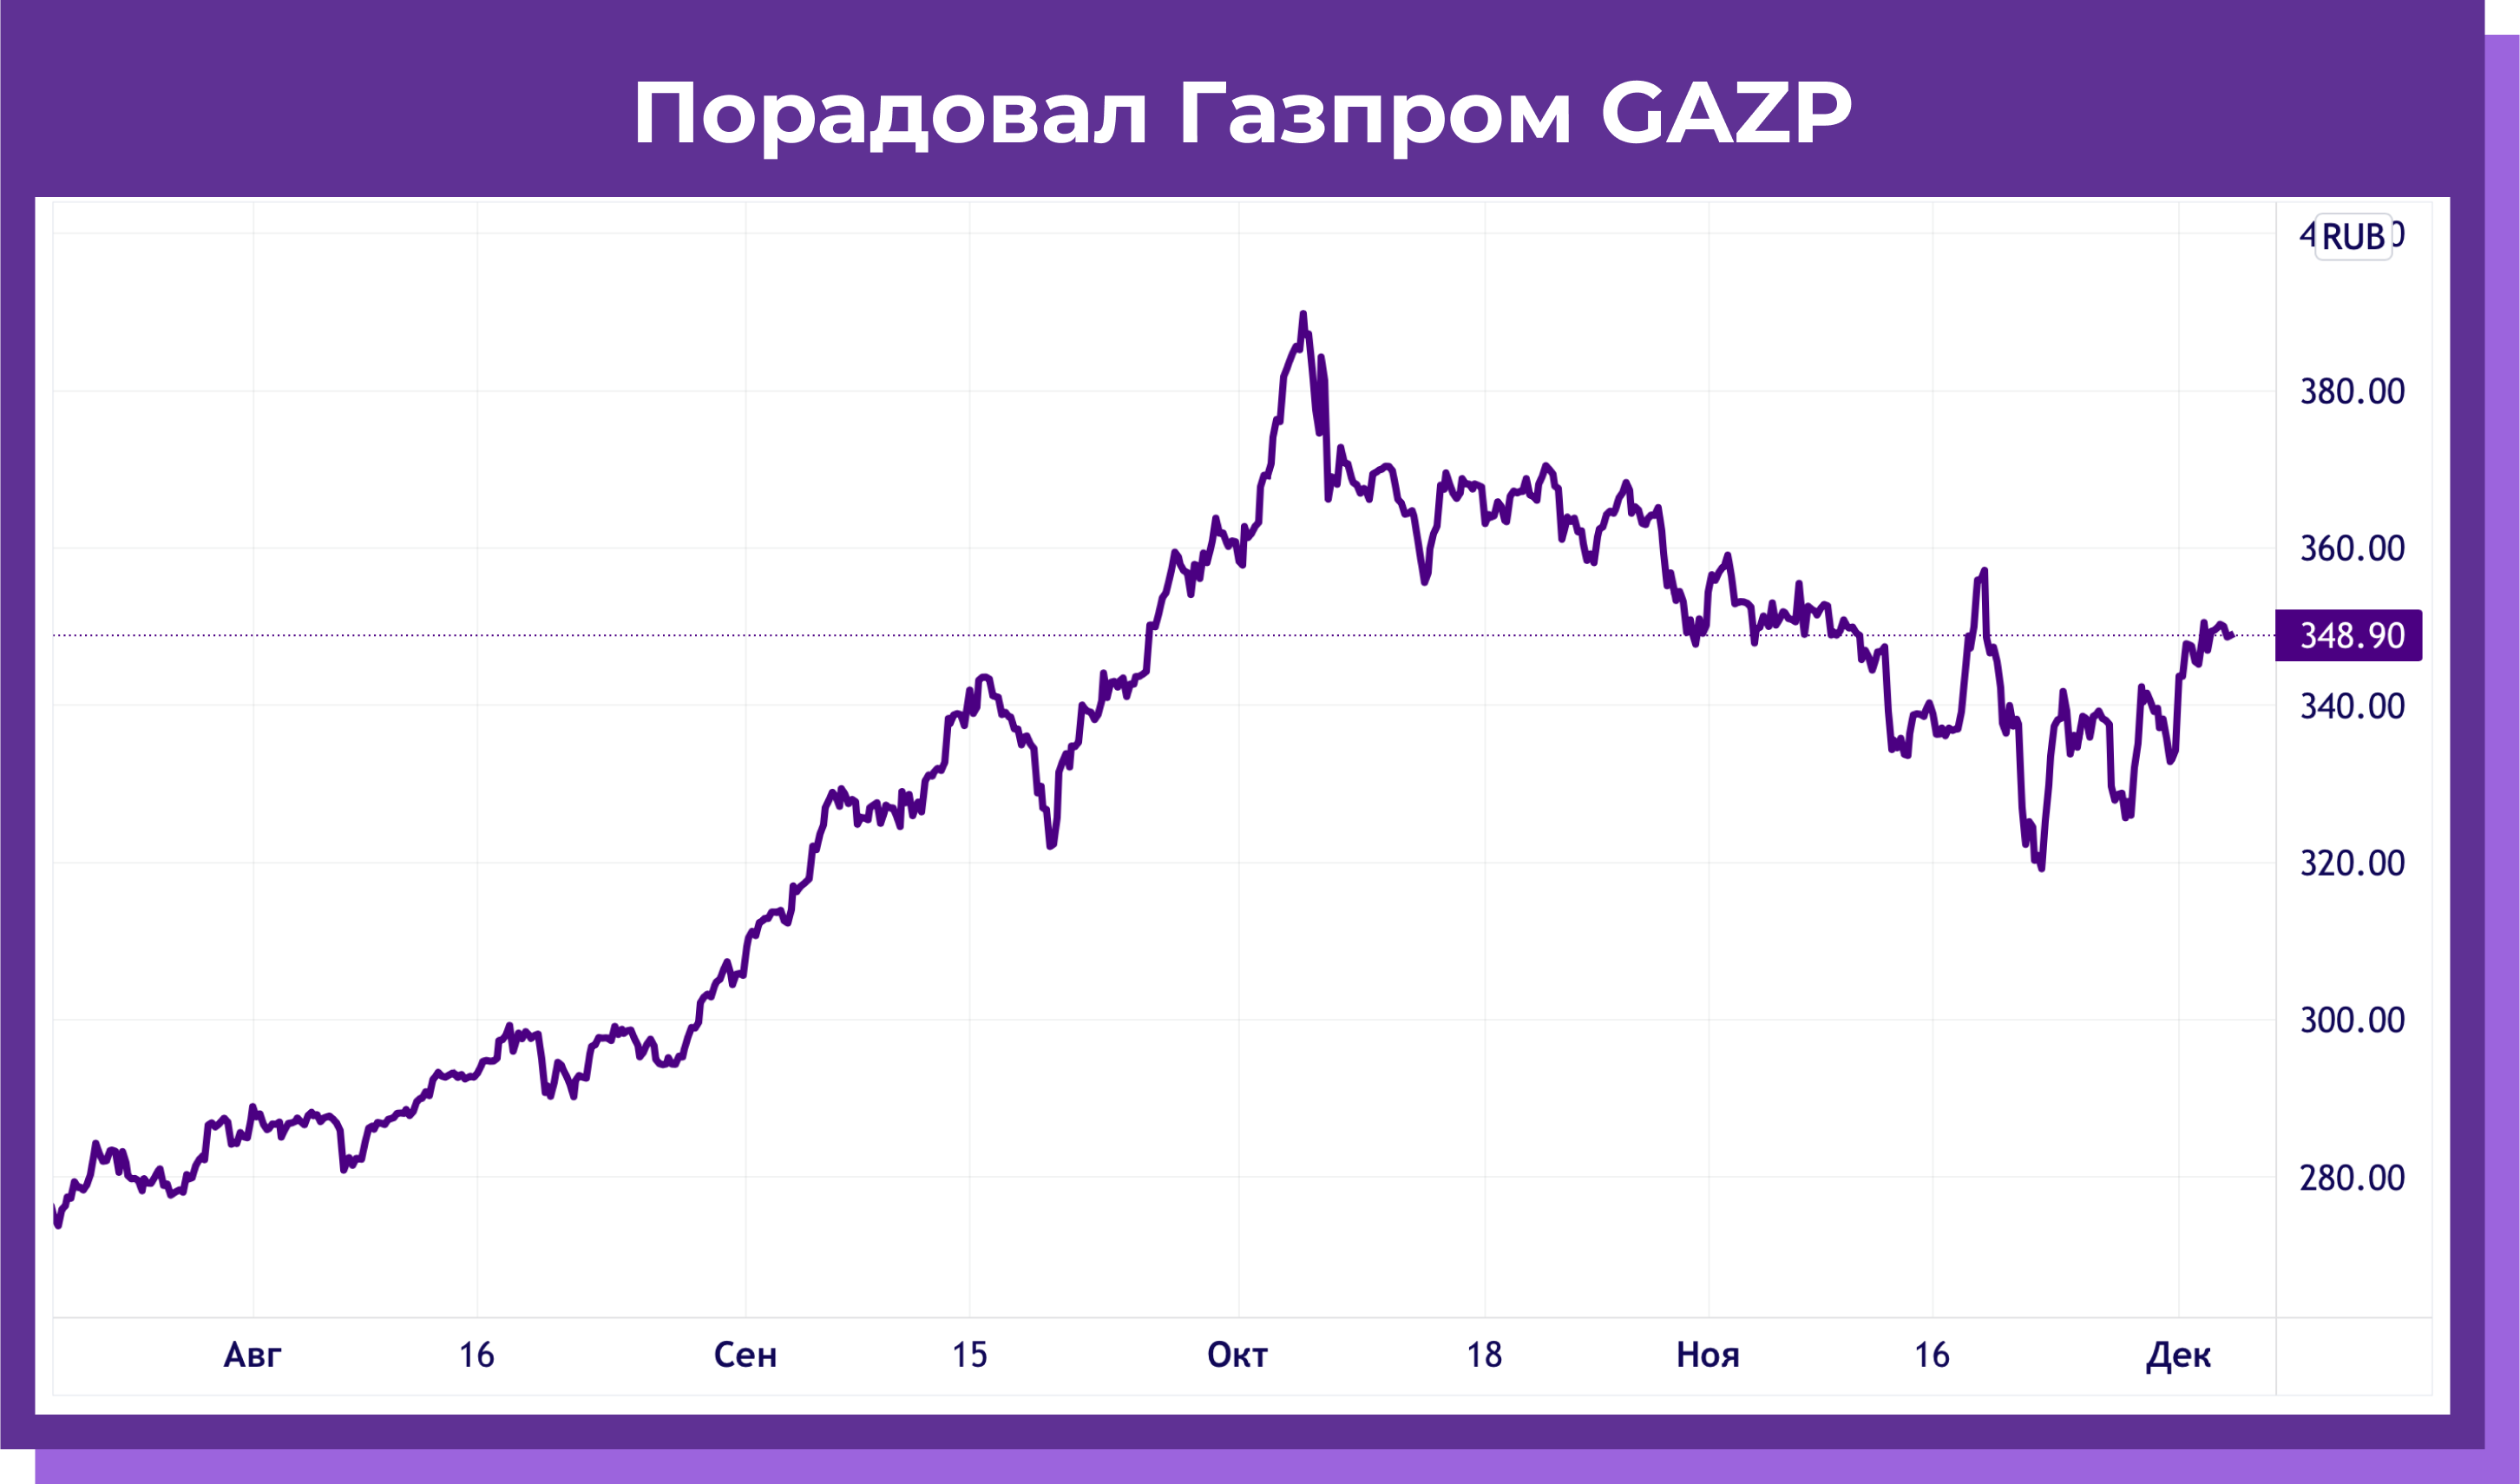 Рис. 11. Порадовал Газпром GAZP